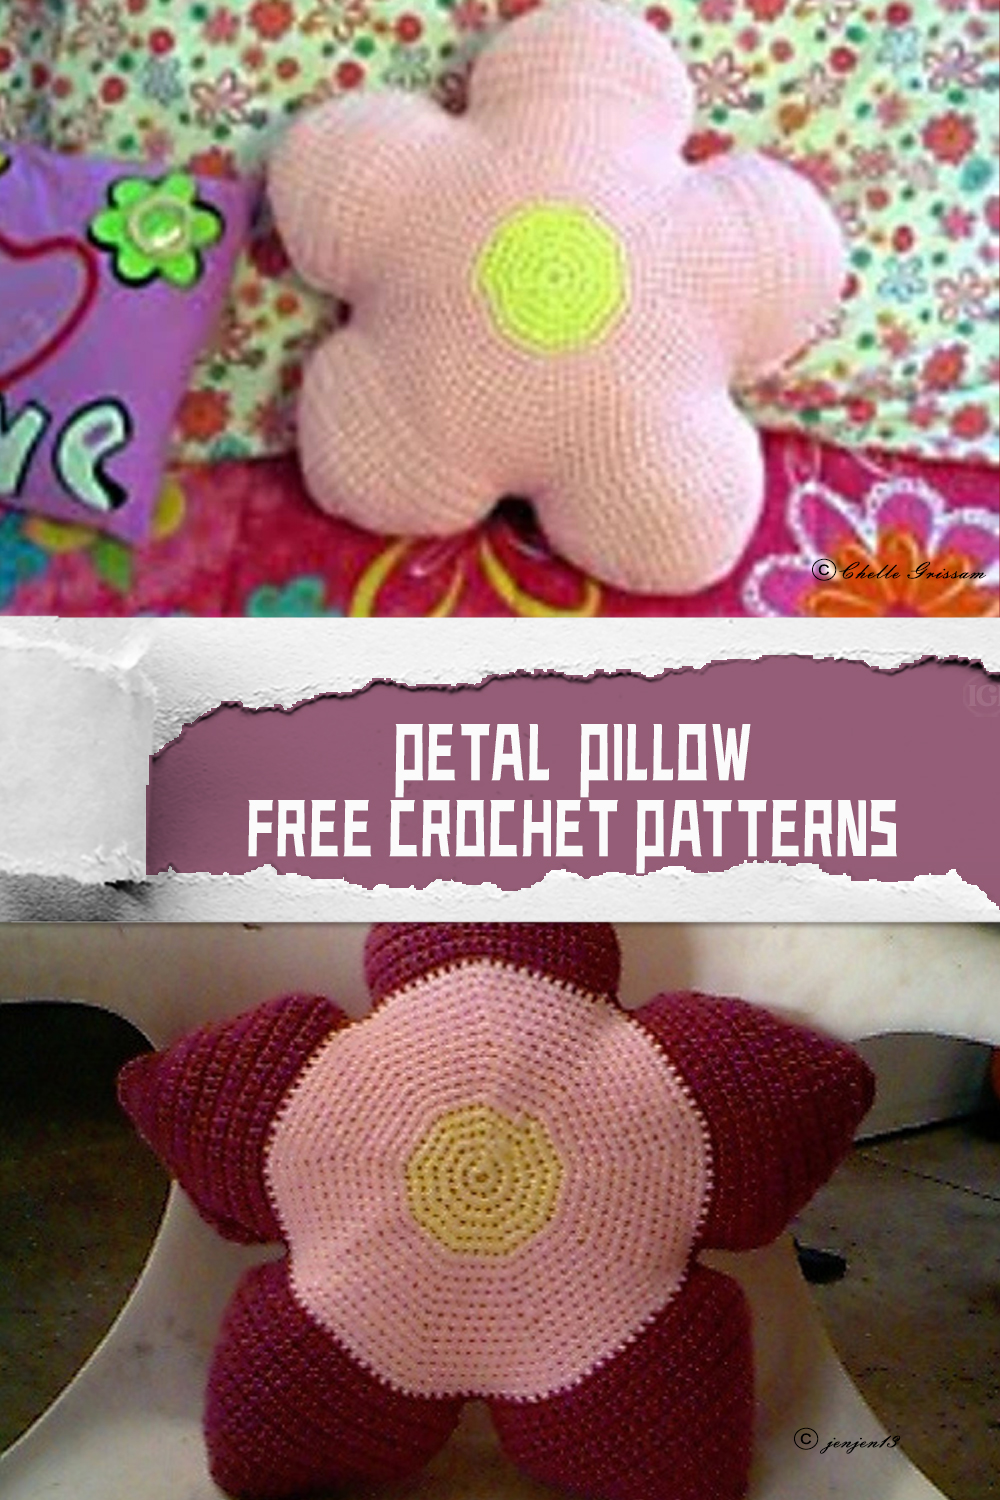 Petal Pillow FREE Crochet Patterns